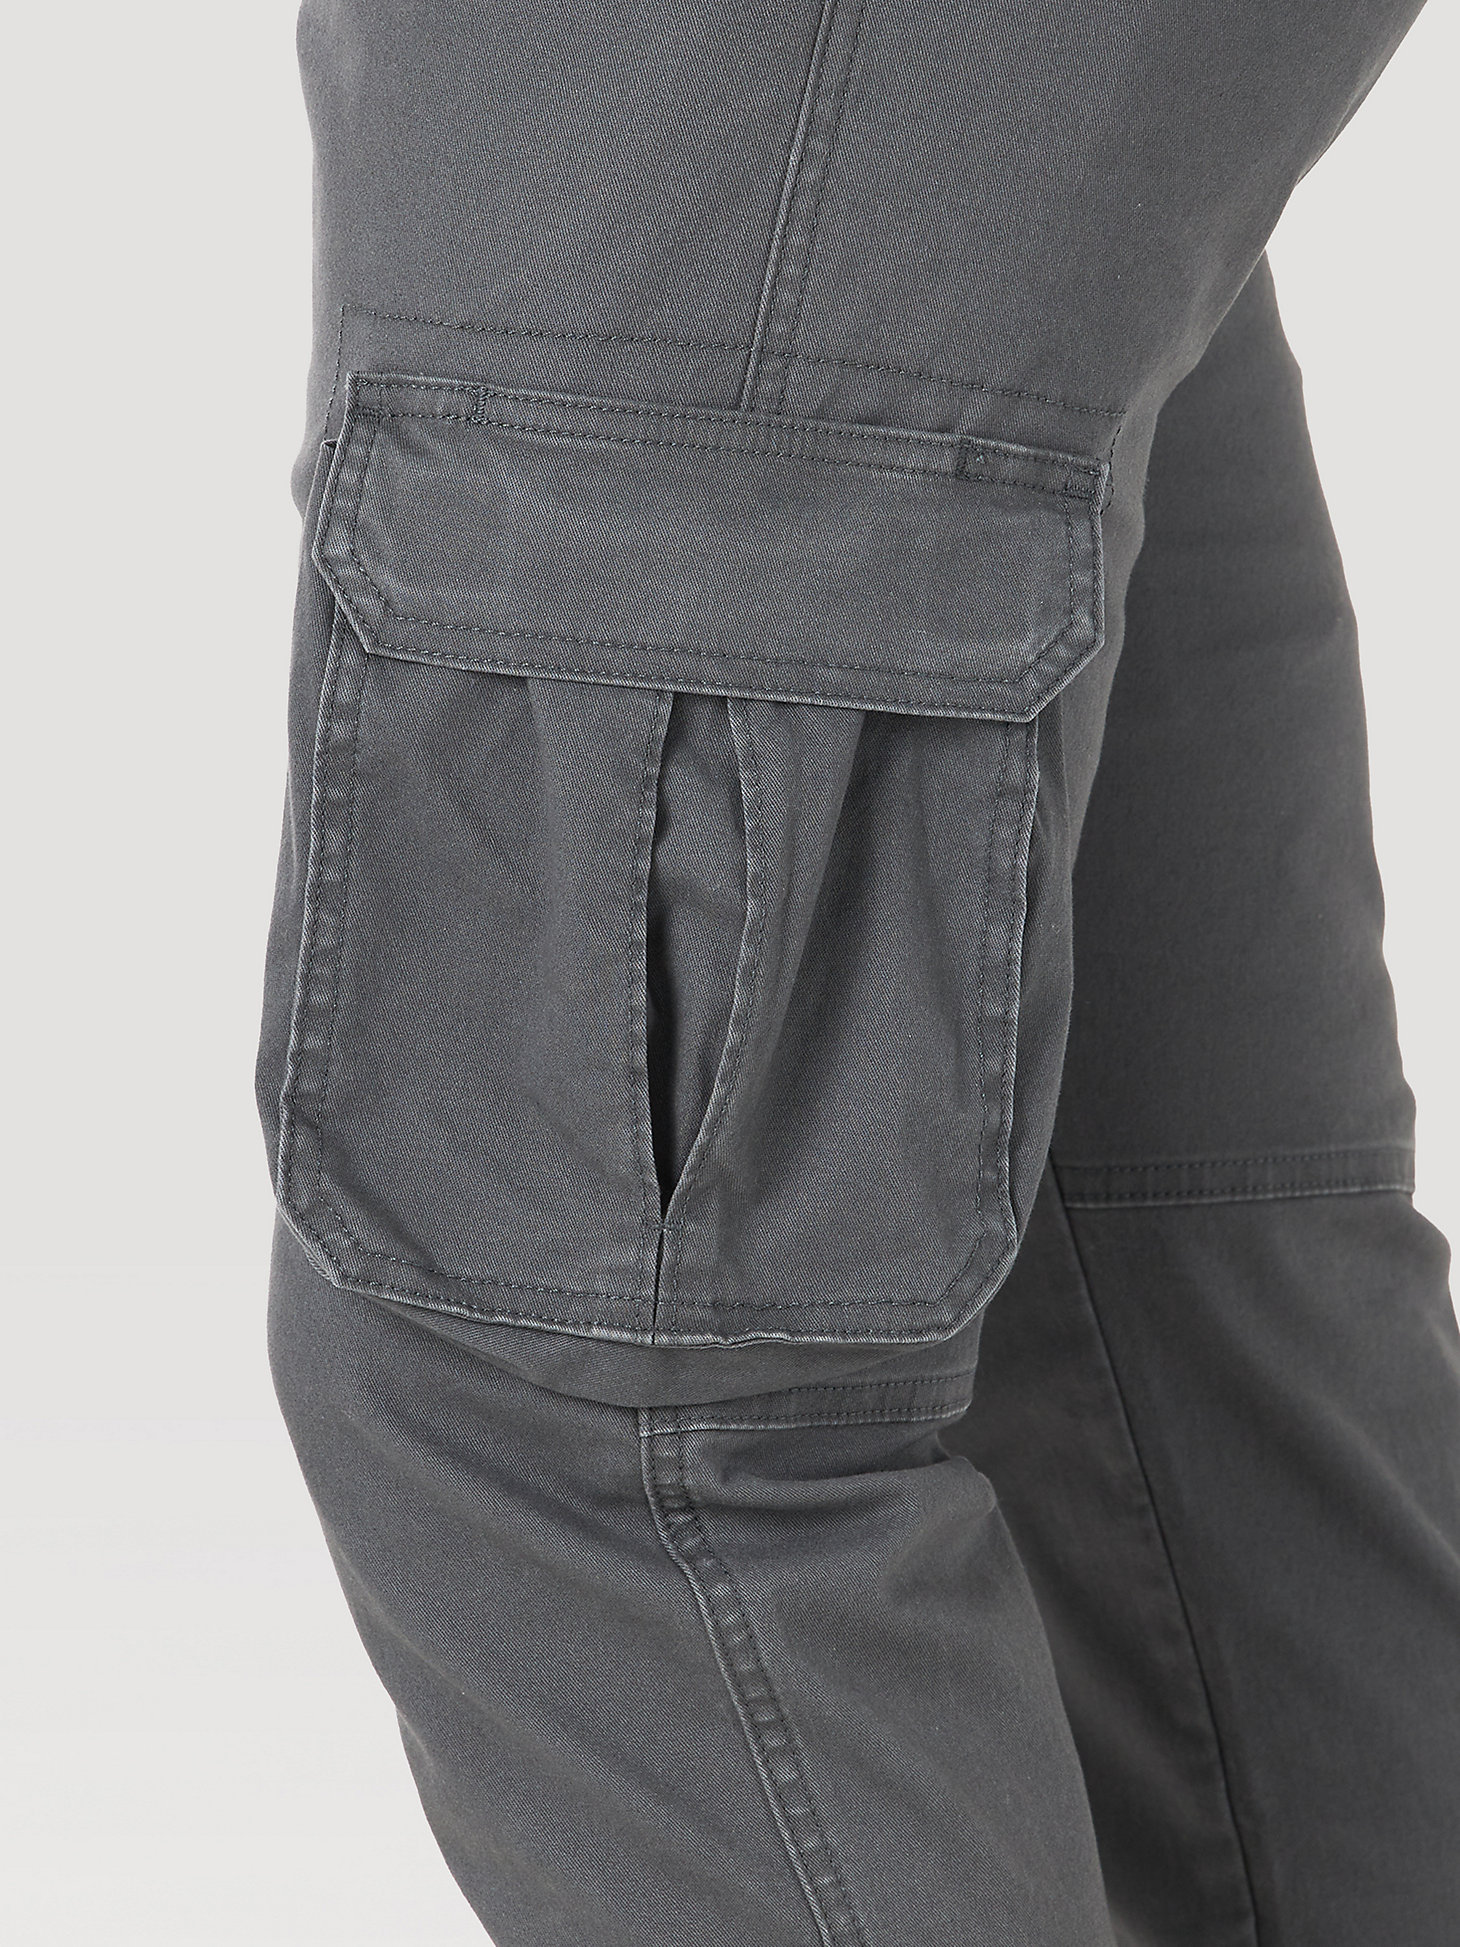 Men's Wrangler® Flex Tapered Cargo Pant in Asphalt alternative view 7